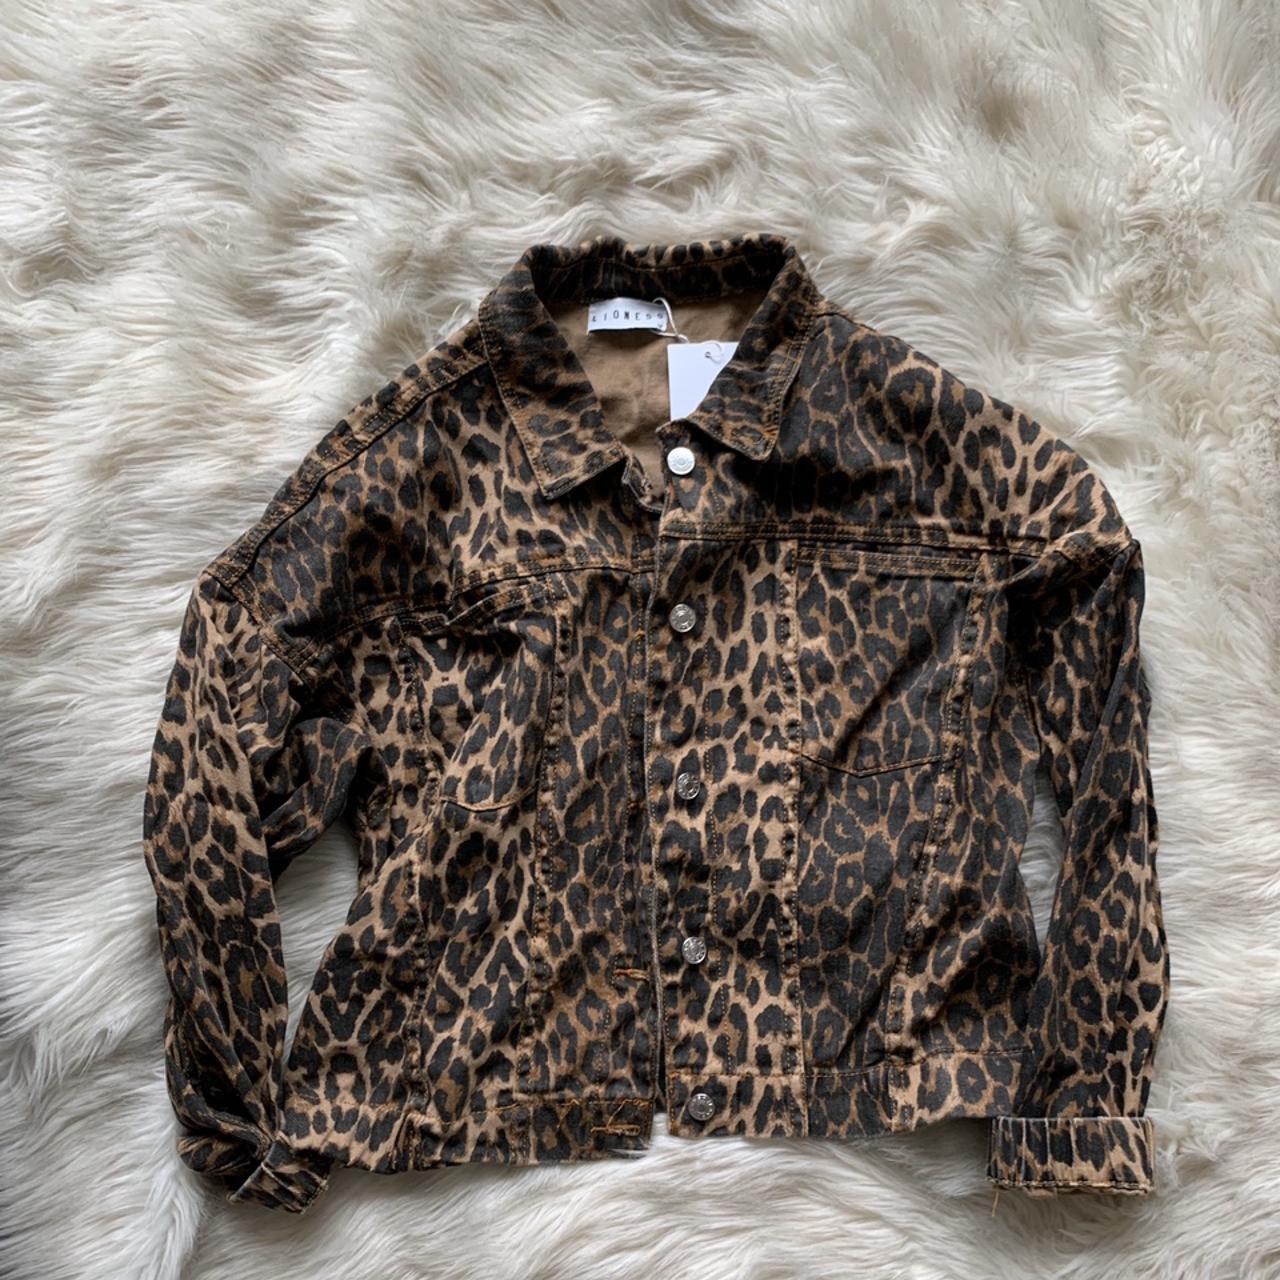 Leopard Jacket - Depop